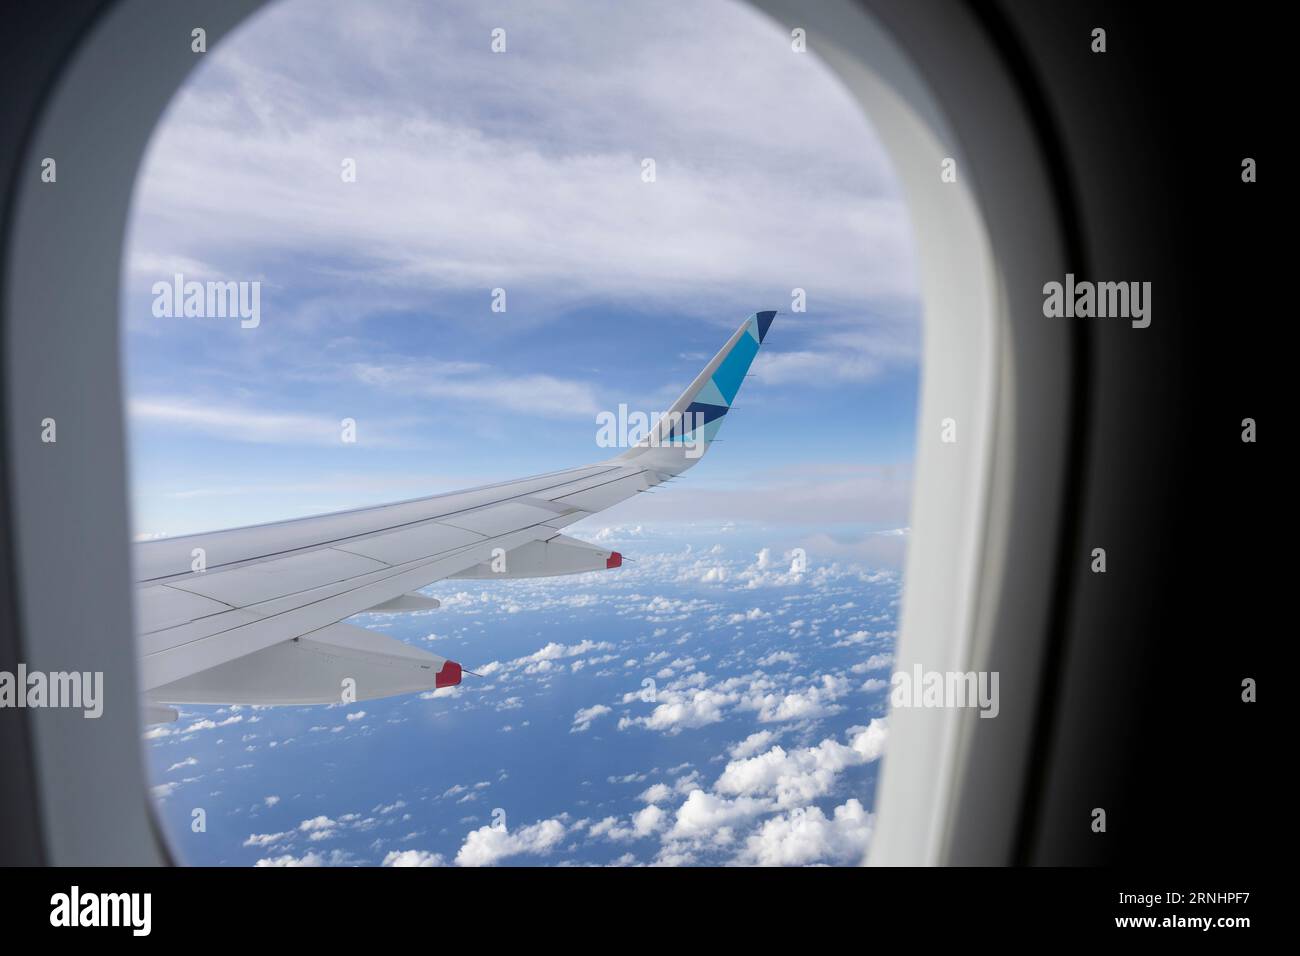 Vista desde la ventana de un plano. Ala de avión fuera de la ventana. Foto de stock